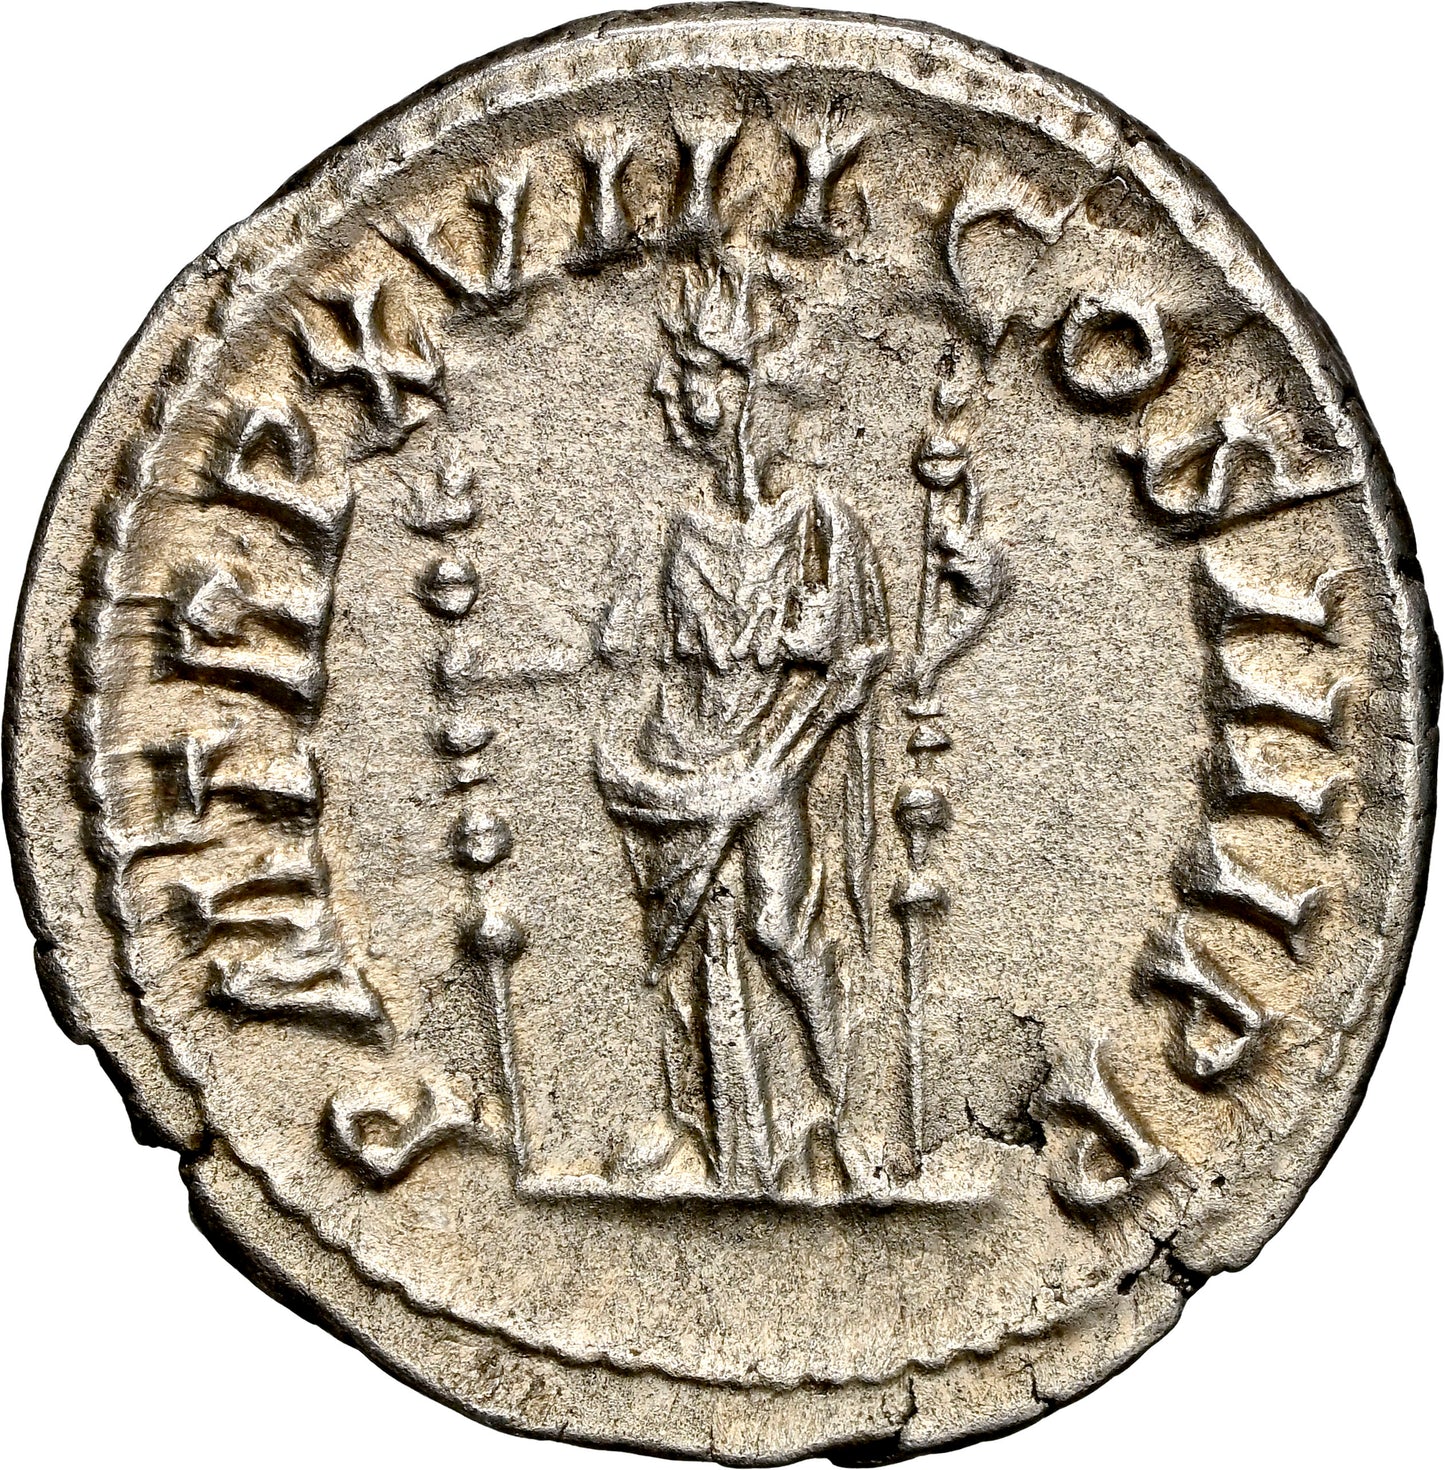 Roman Empire - Caracalla - Silver Denarius - NGC Ch AU - RIC:266